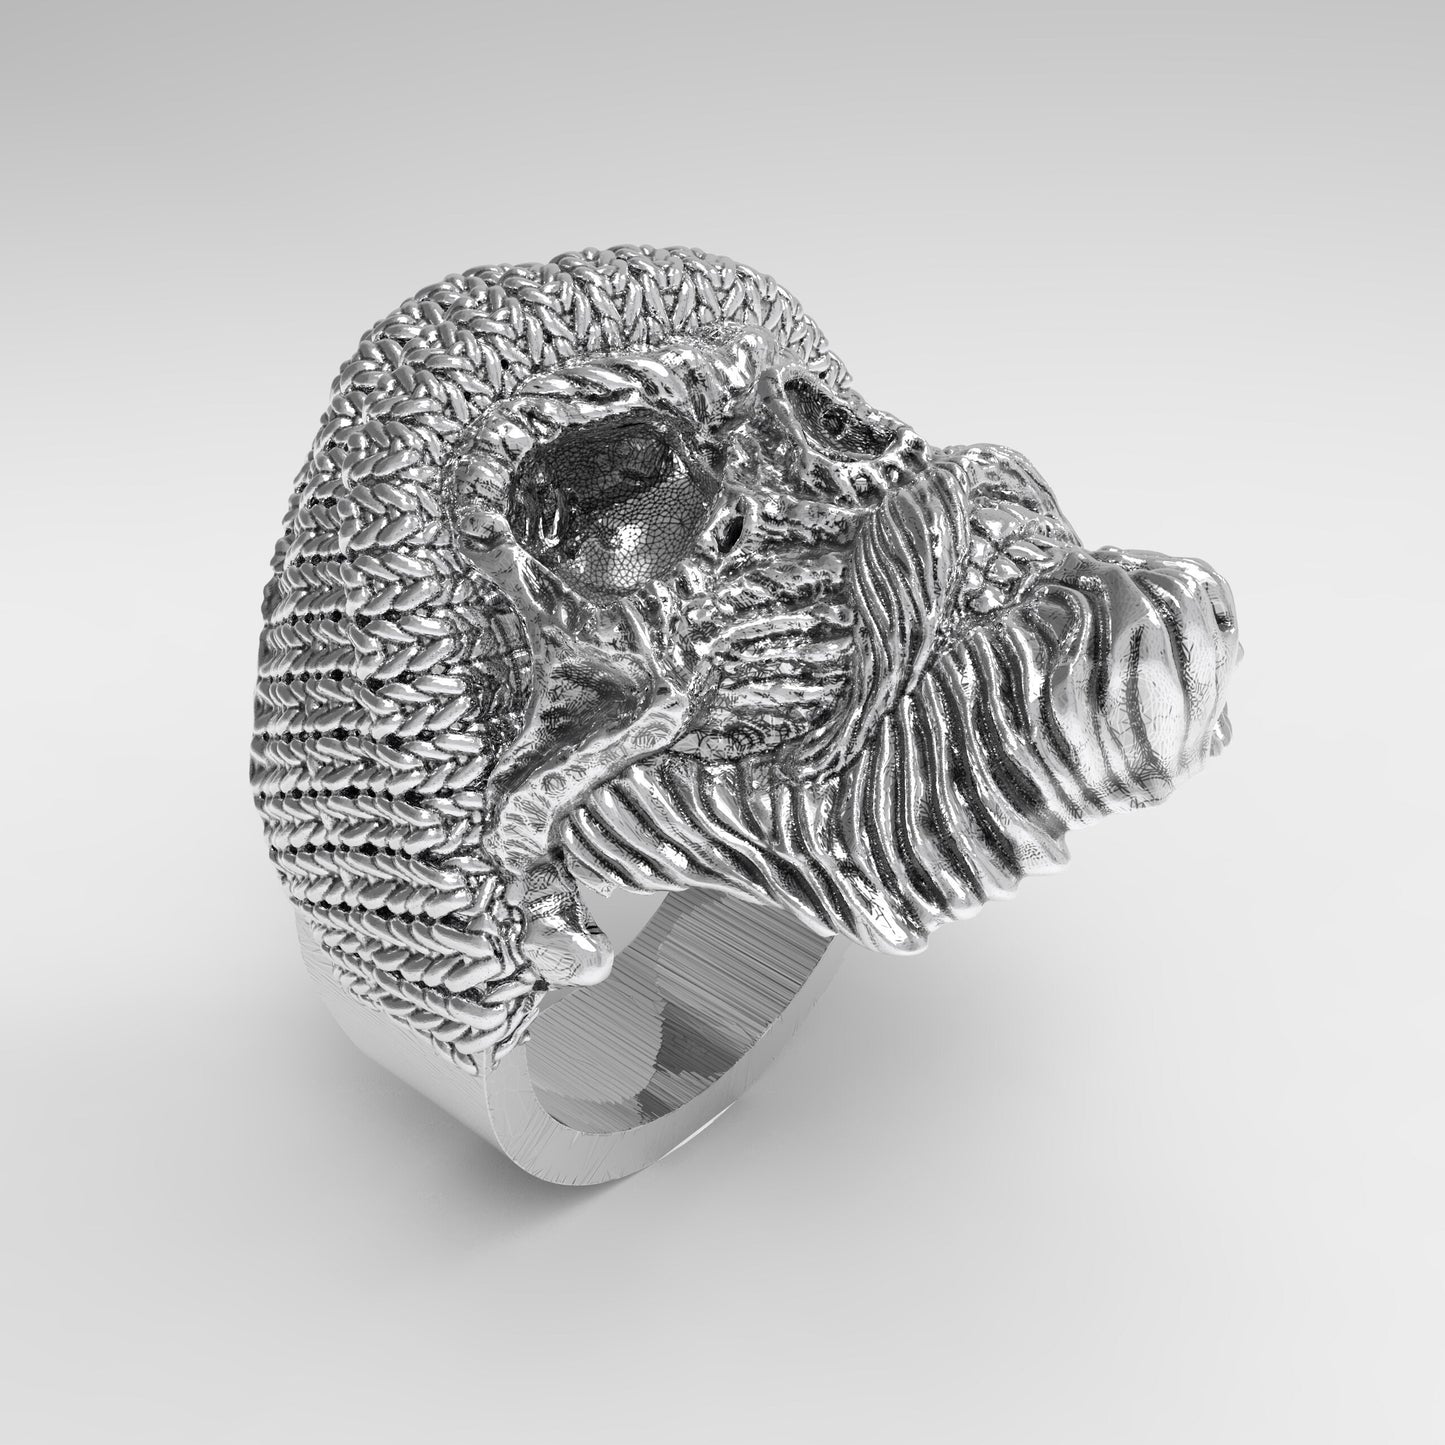 Pánský prsten ve stylu pletené čepice Lebka s vousy a knírem Stříbrný 925